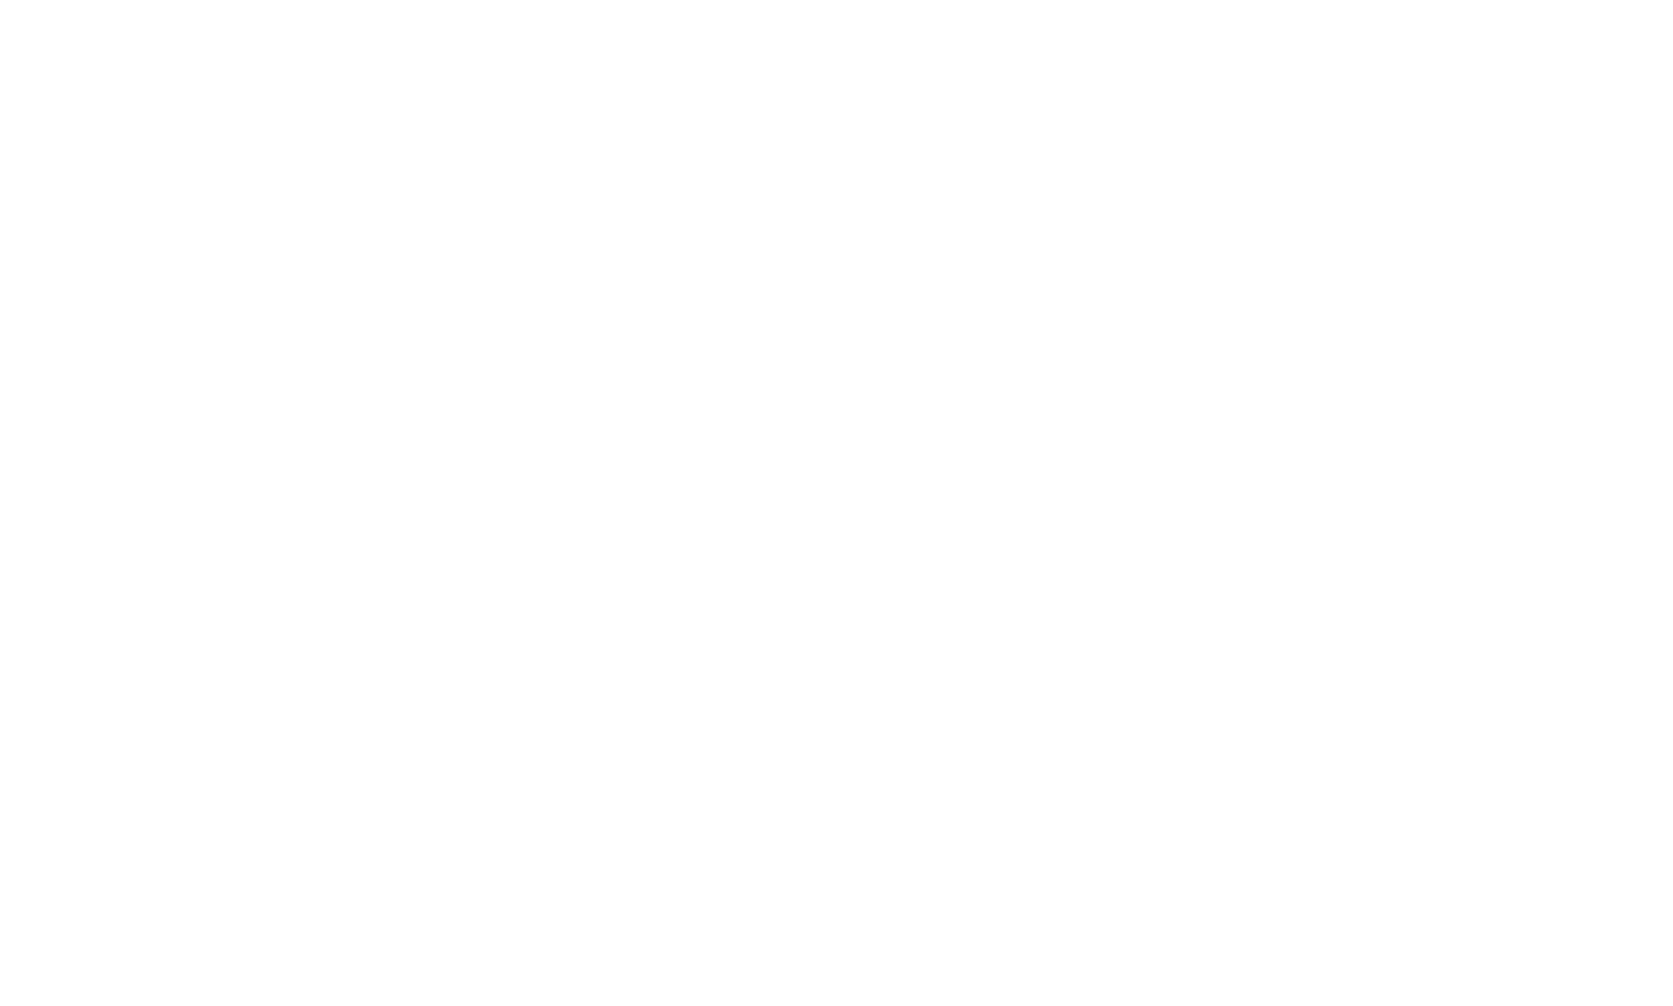 Top Acne Facial logo white